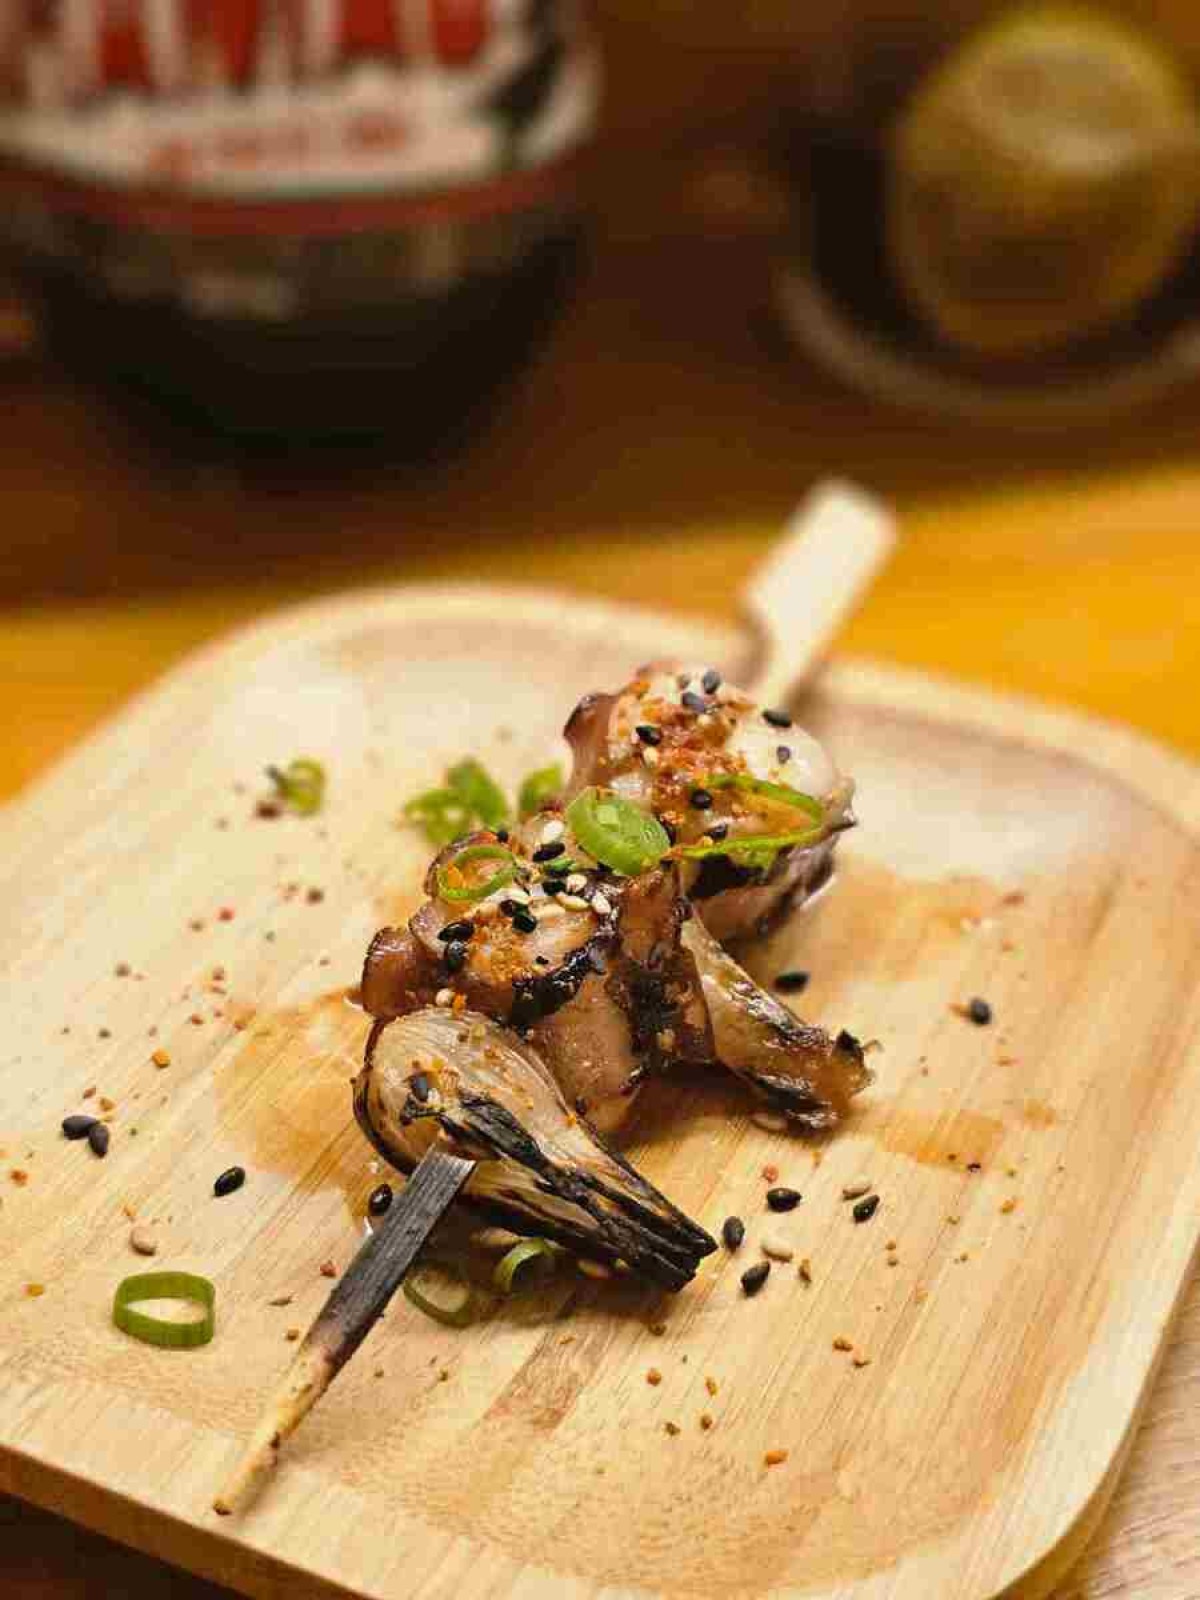 Grelhado na churrasqueira japonesa, o polvo ganha sabor em um espetinho com conserva de cebolinha japonesa e o tempero togarashi